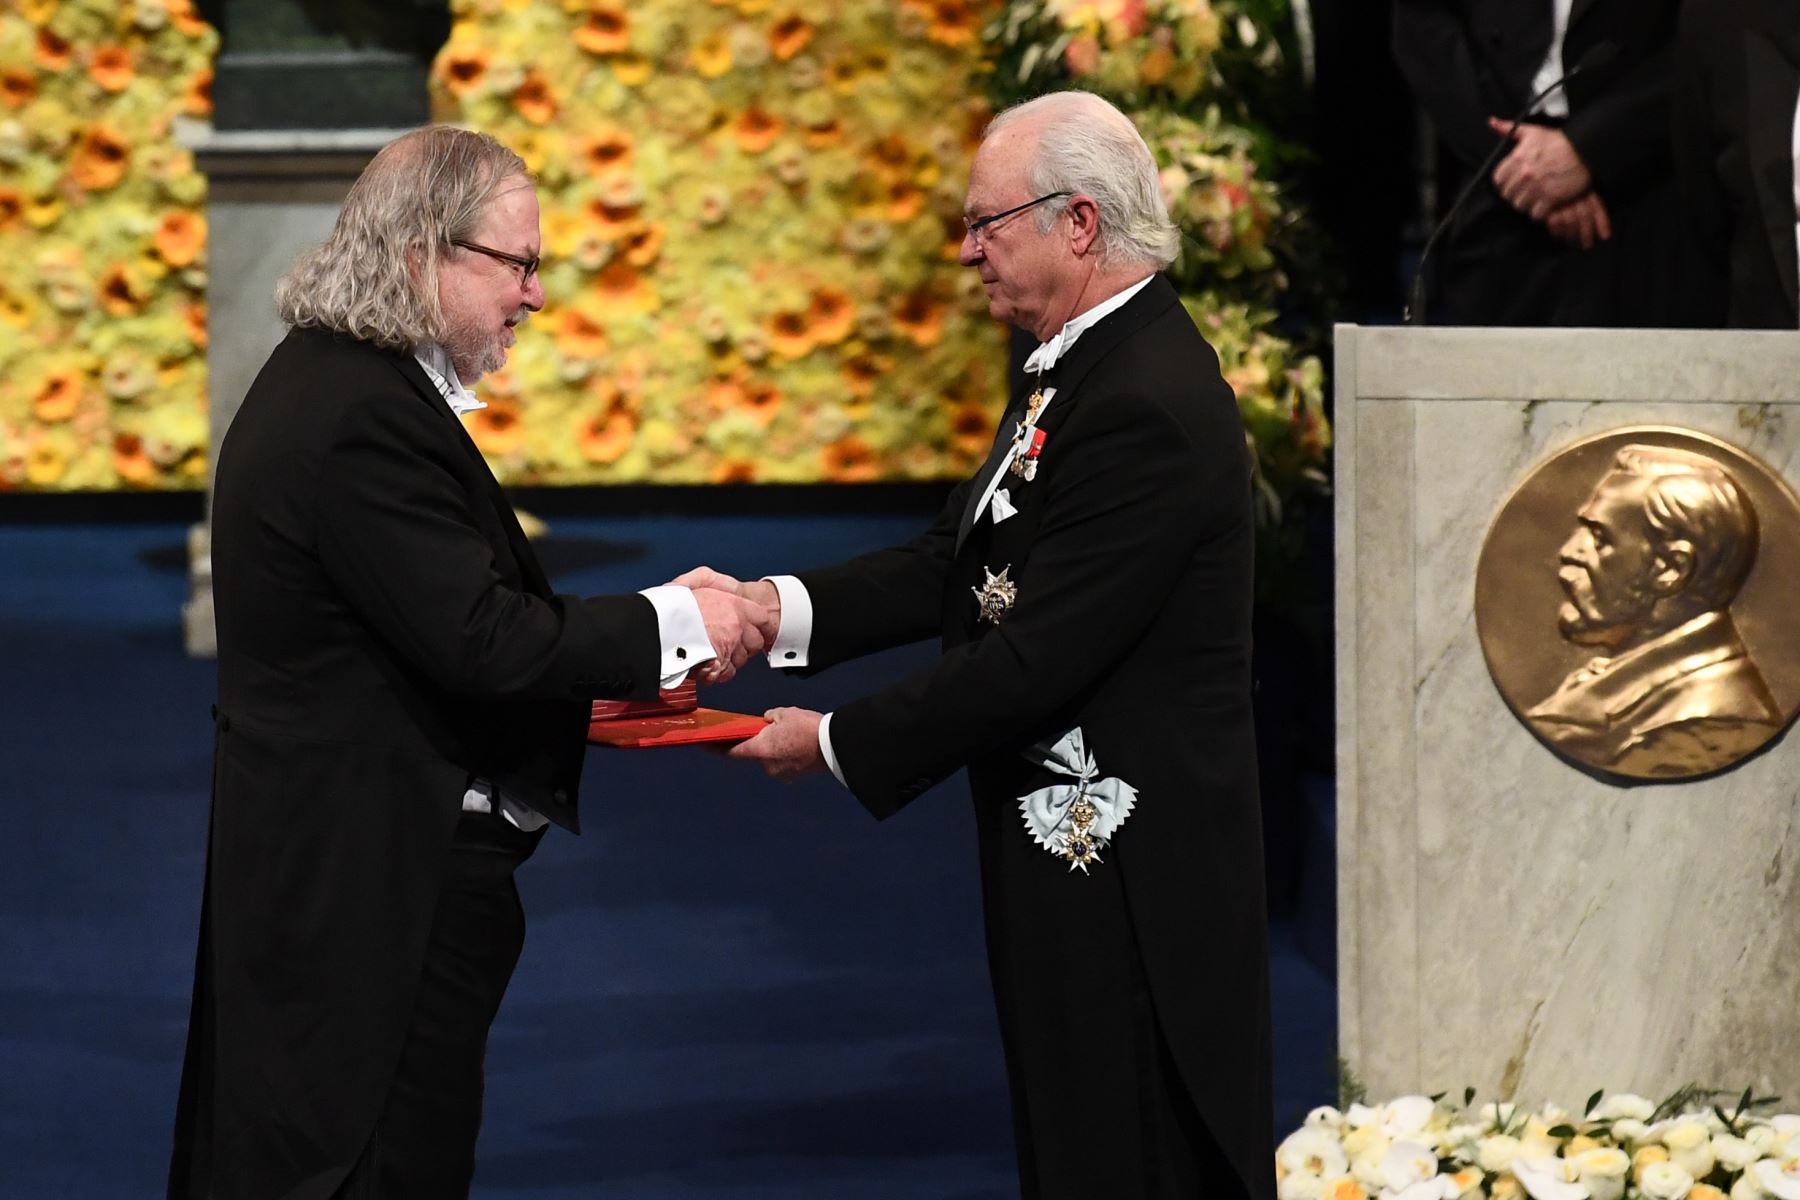 El inmunólogo y co-laureado estadounidense del Premio Nobel de Fisiología o Medicina 2018, James Allison, recibe su Premio Nobel del Rey Carl XVI Gustaf de Suecia (R) durante la ceremonia de entrega de premios 2018 el 10 de diciembre de 2018 en la Sala de Conciertos de Estocolmo, Suecia. AFP